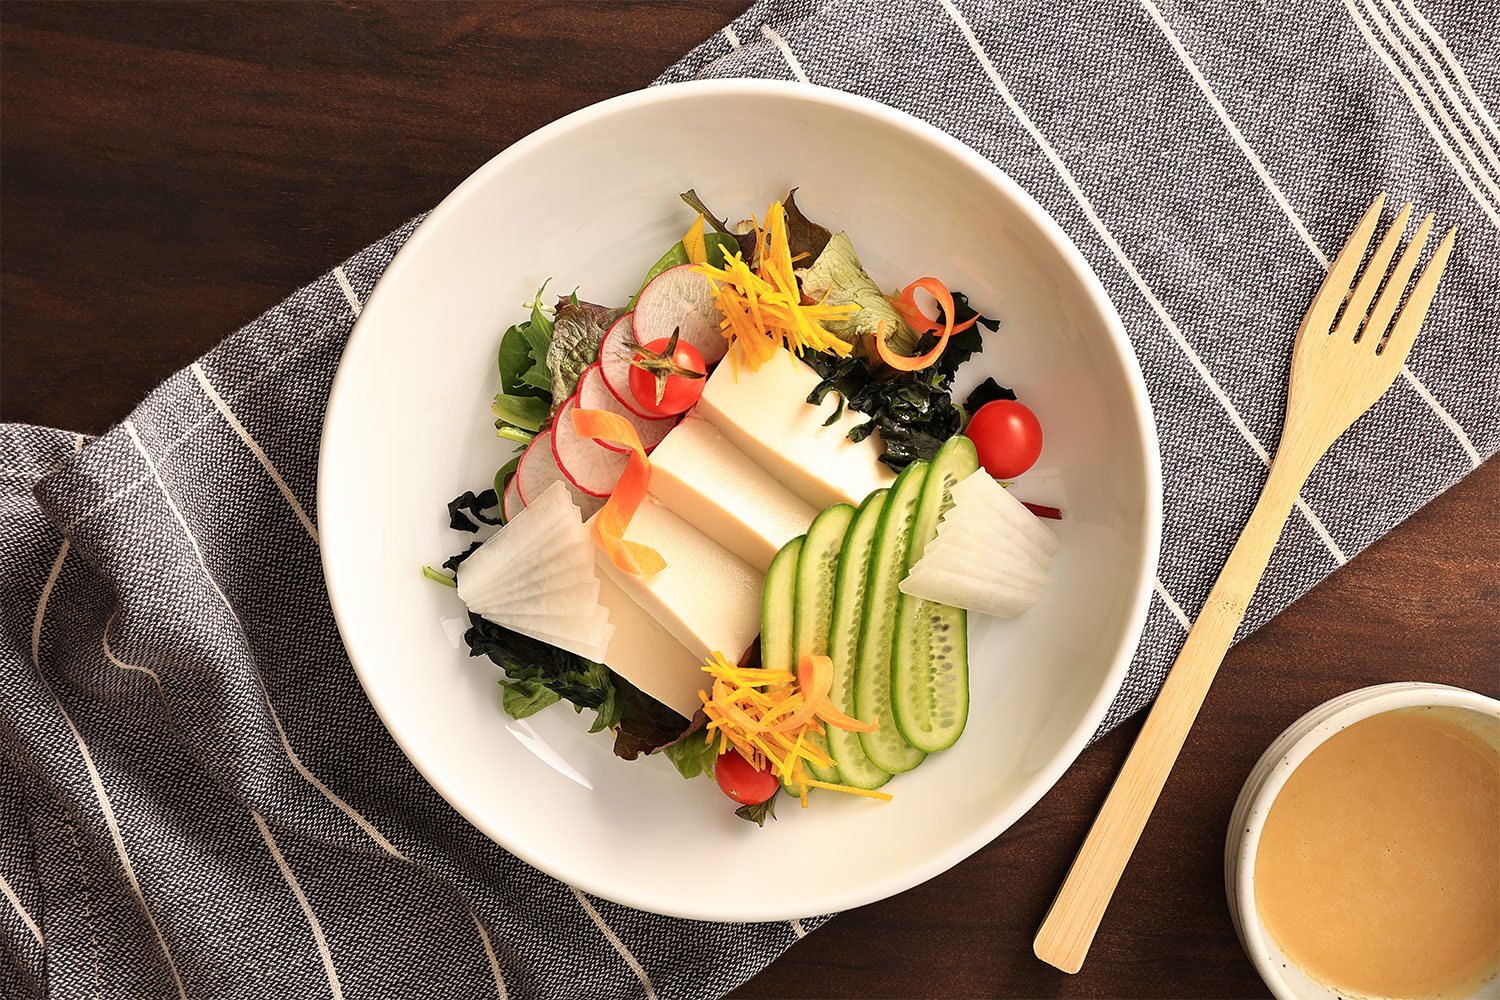 Tofu vegetable salad